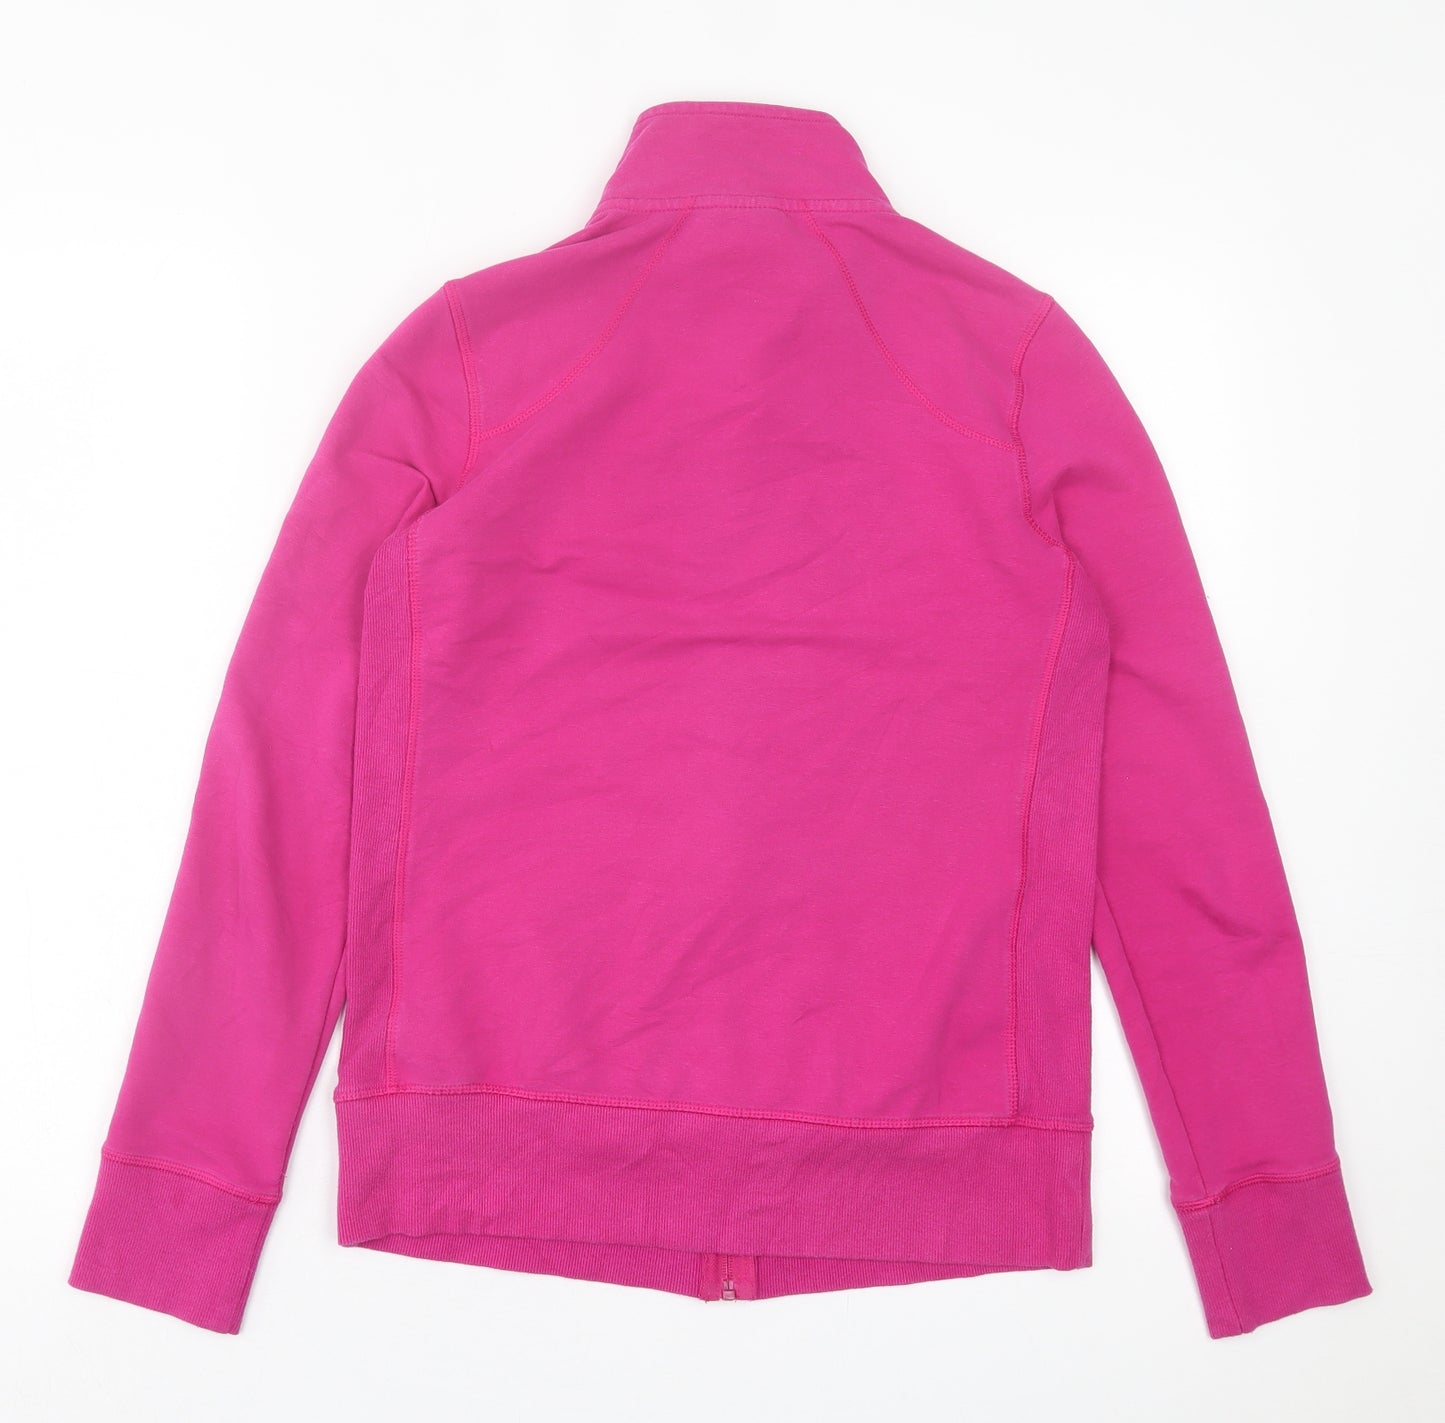 Danskin Womens Pink  Cotton Full Zip Sweatshirt Size S  Zip